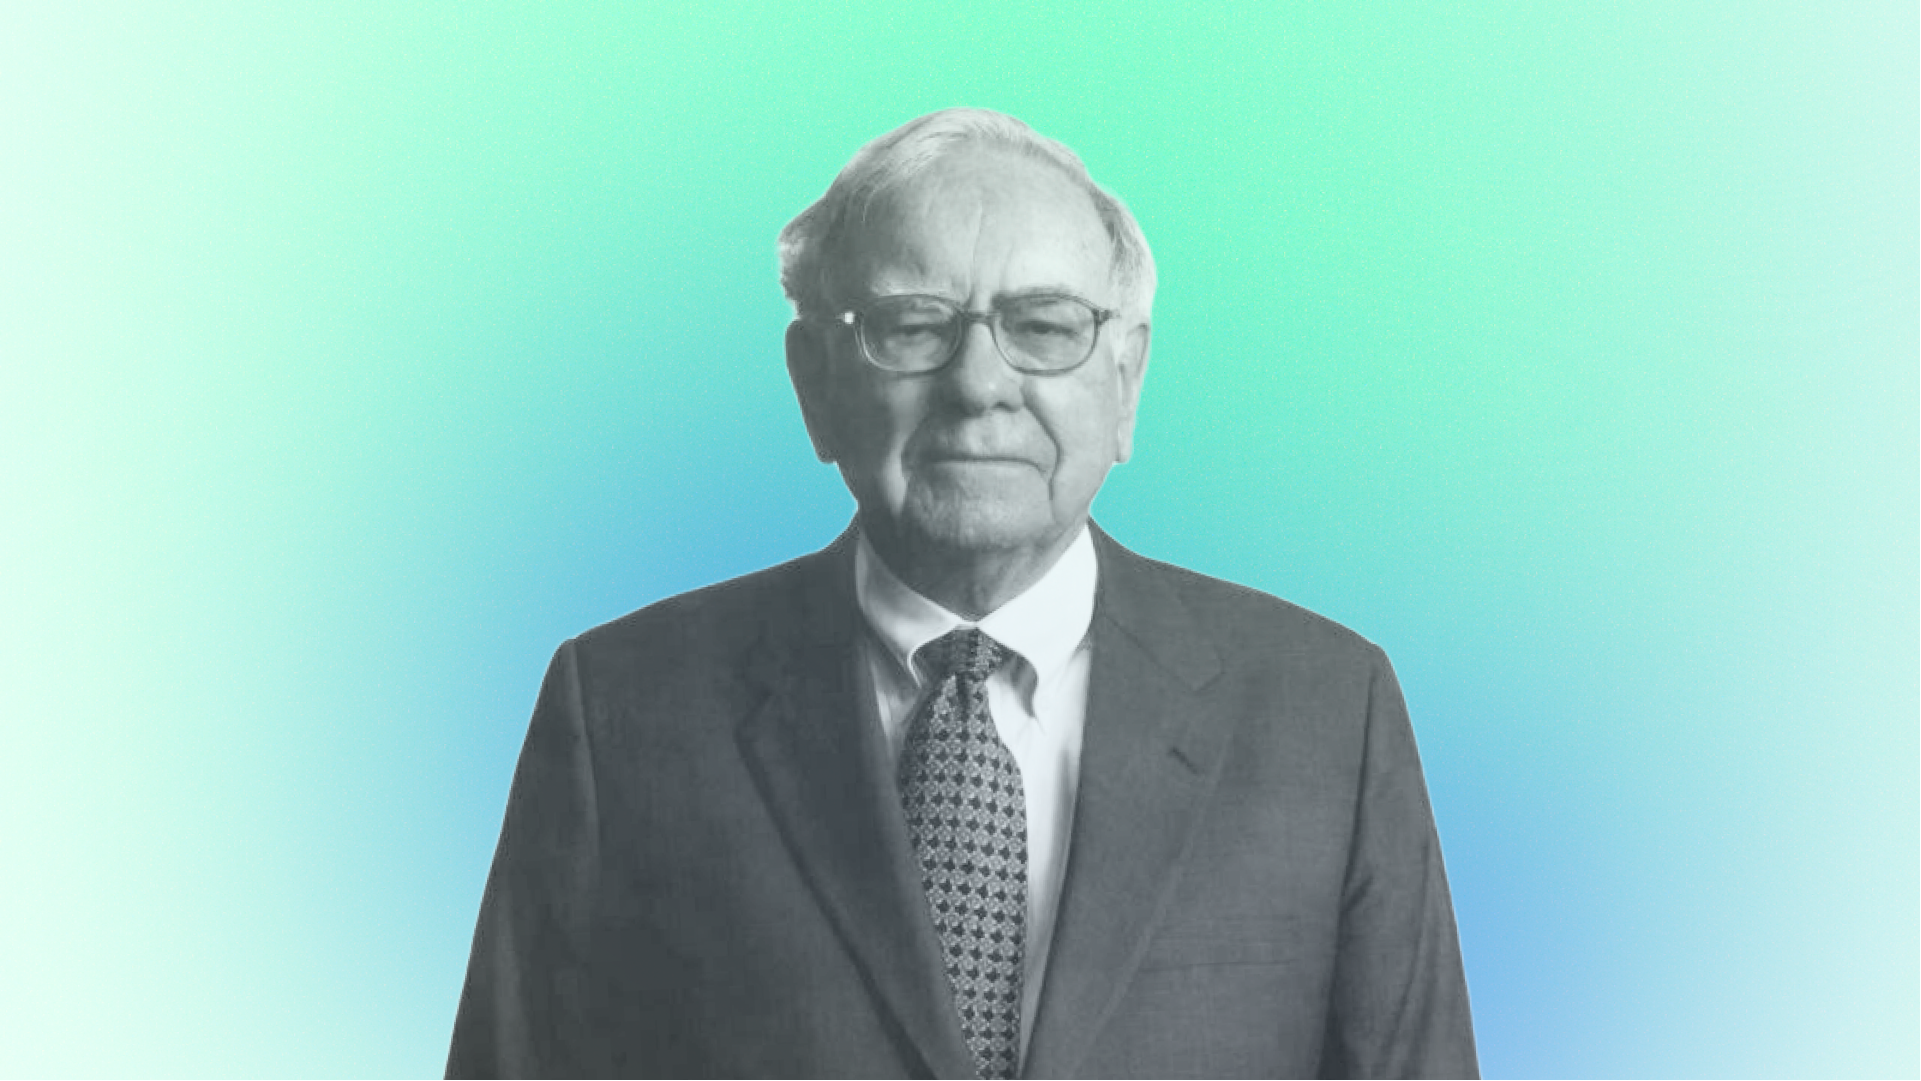 Warren Buffett portrait in Quartr style